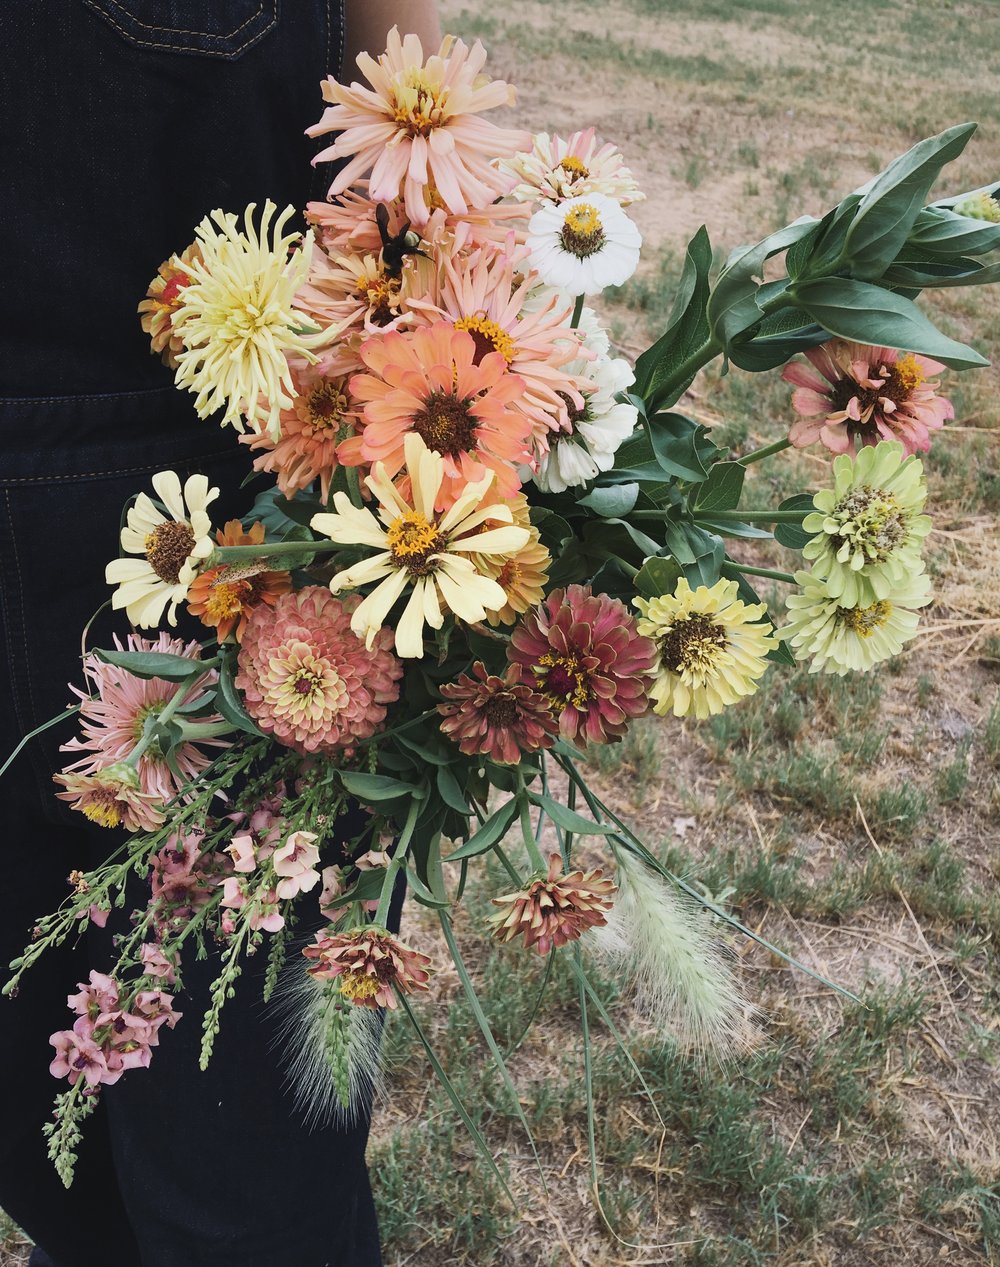 Dallas Floral Designer - Olive Grove Design - Flower Farm Visit